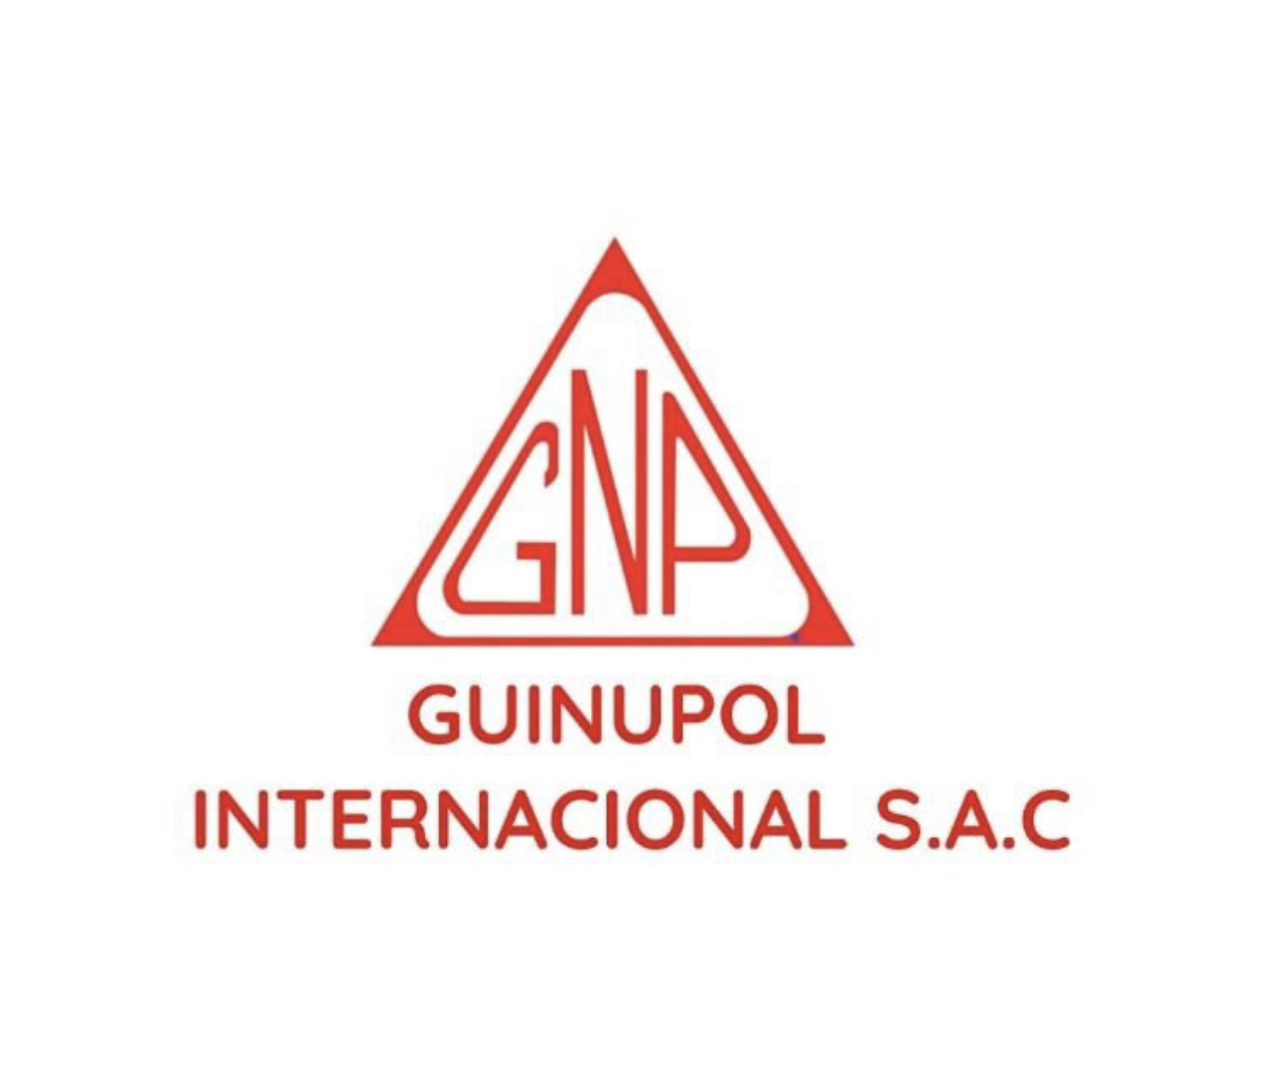 Guinupol